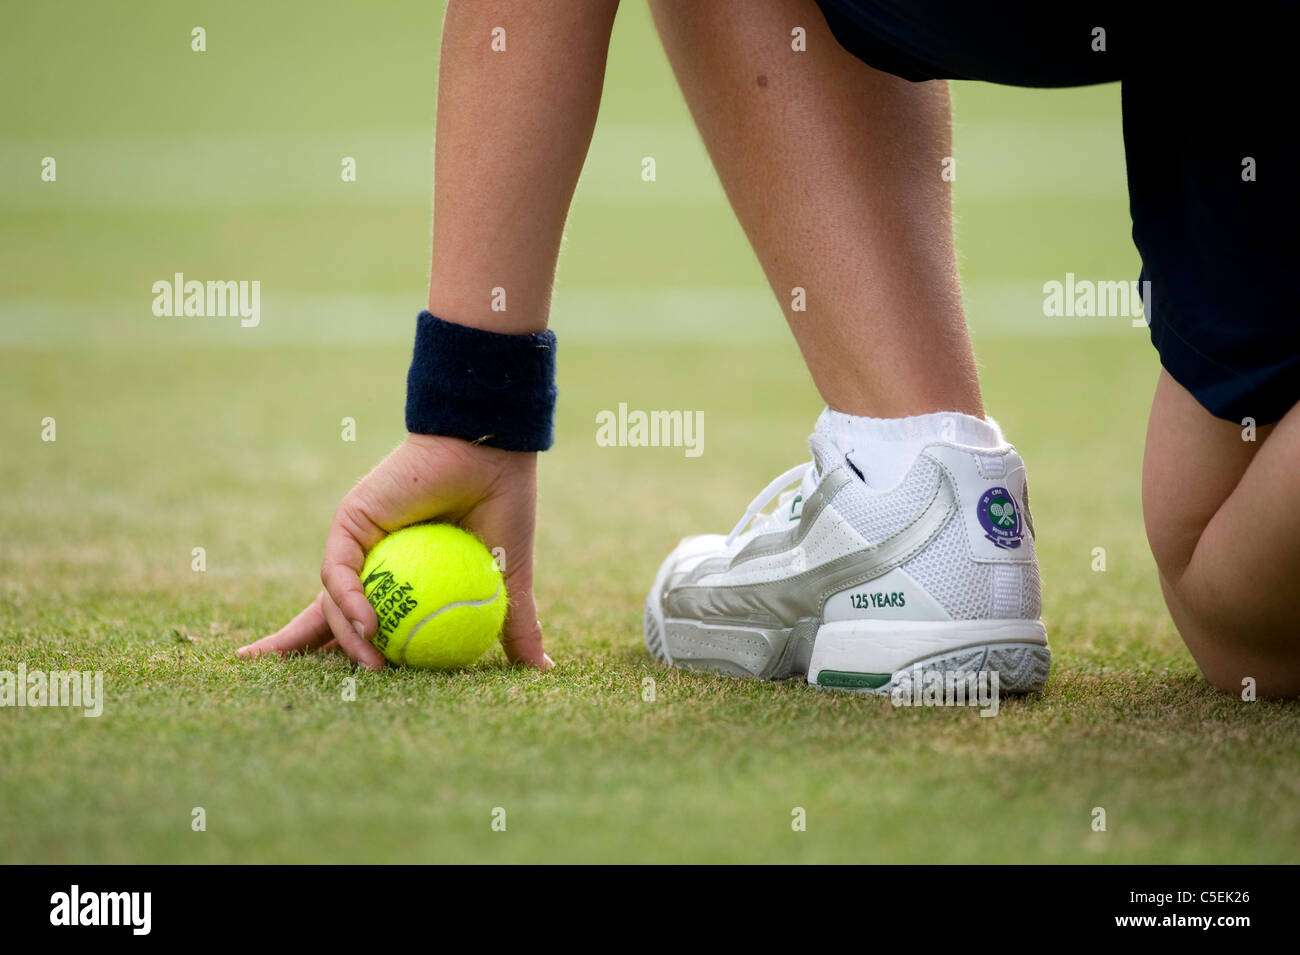 Chaussure garçon Balle Balle et détaillé au cours de la 2011 Championnats de tennis de Wimbledon Banque D'Images